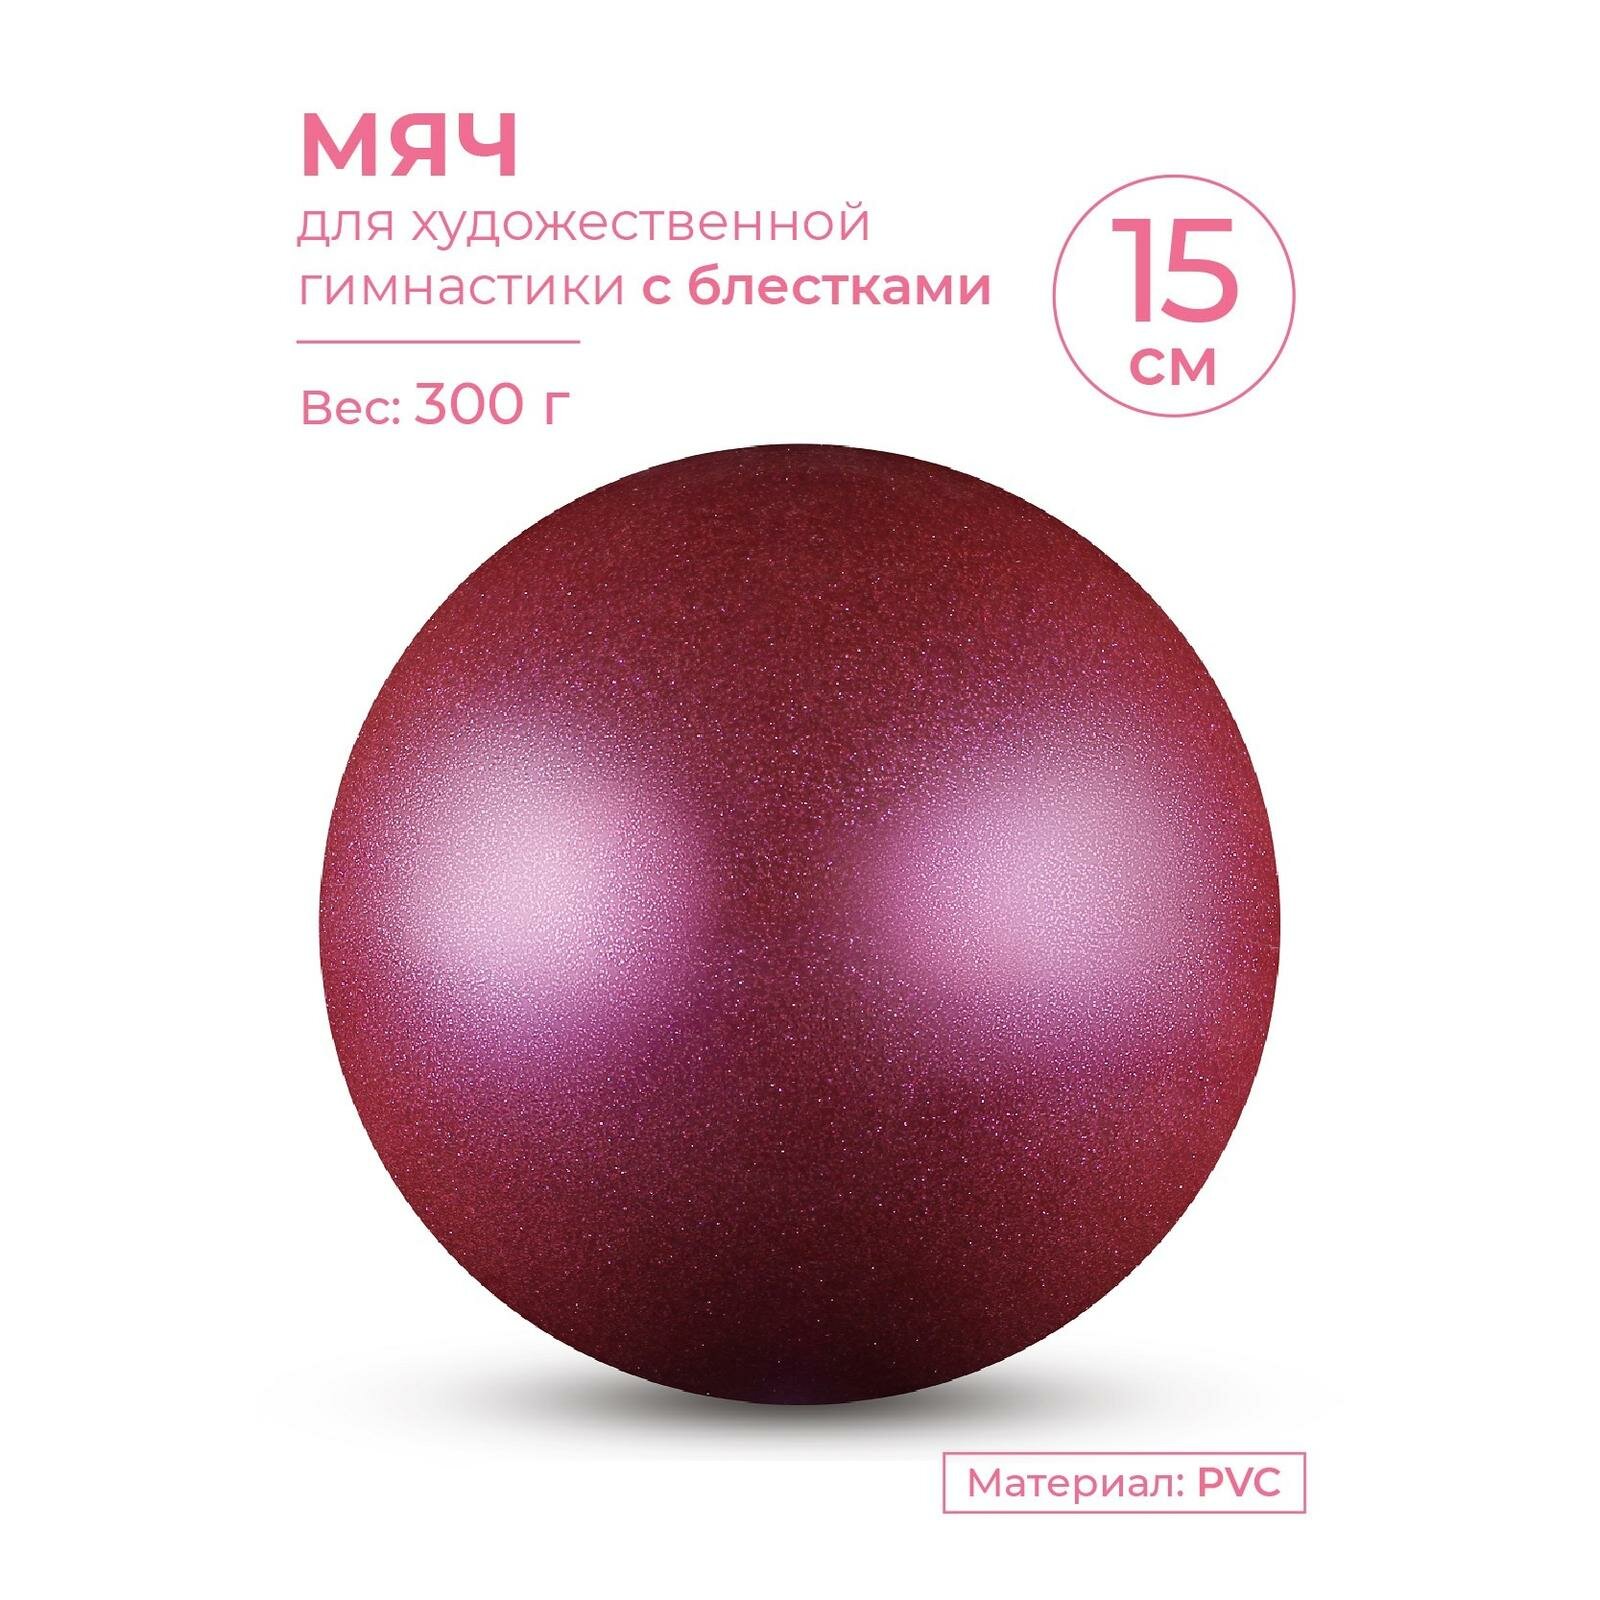 Мяч для художественной гимнастики INDIGO металлик 300 г IN119 Фиолетовый с блестками 15 см